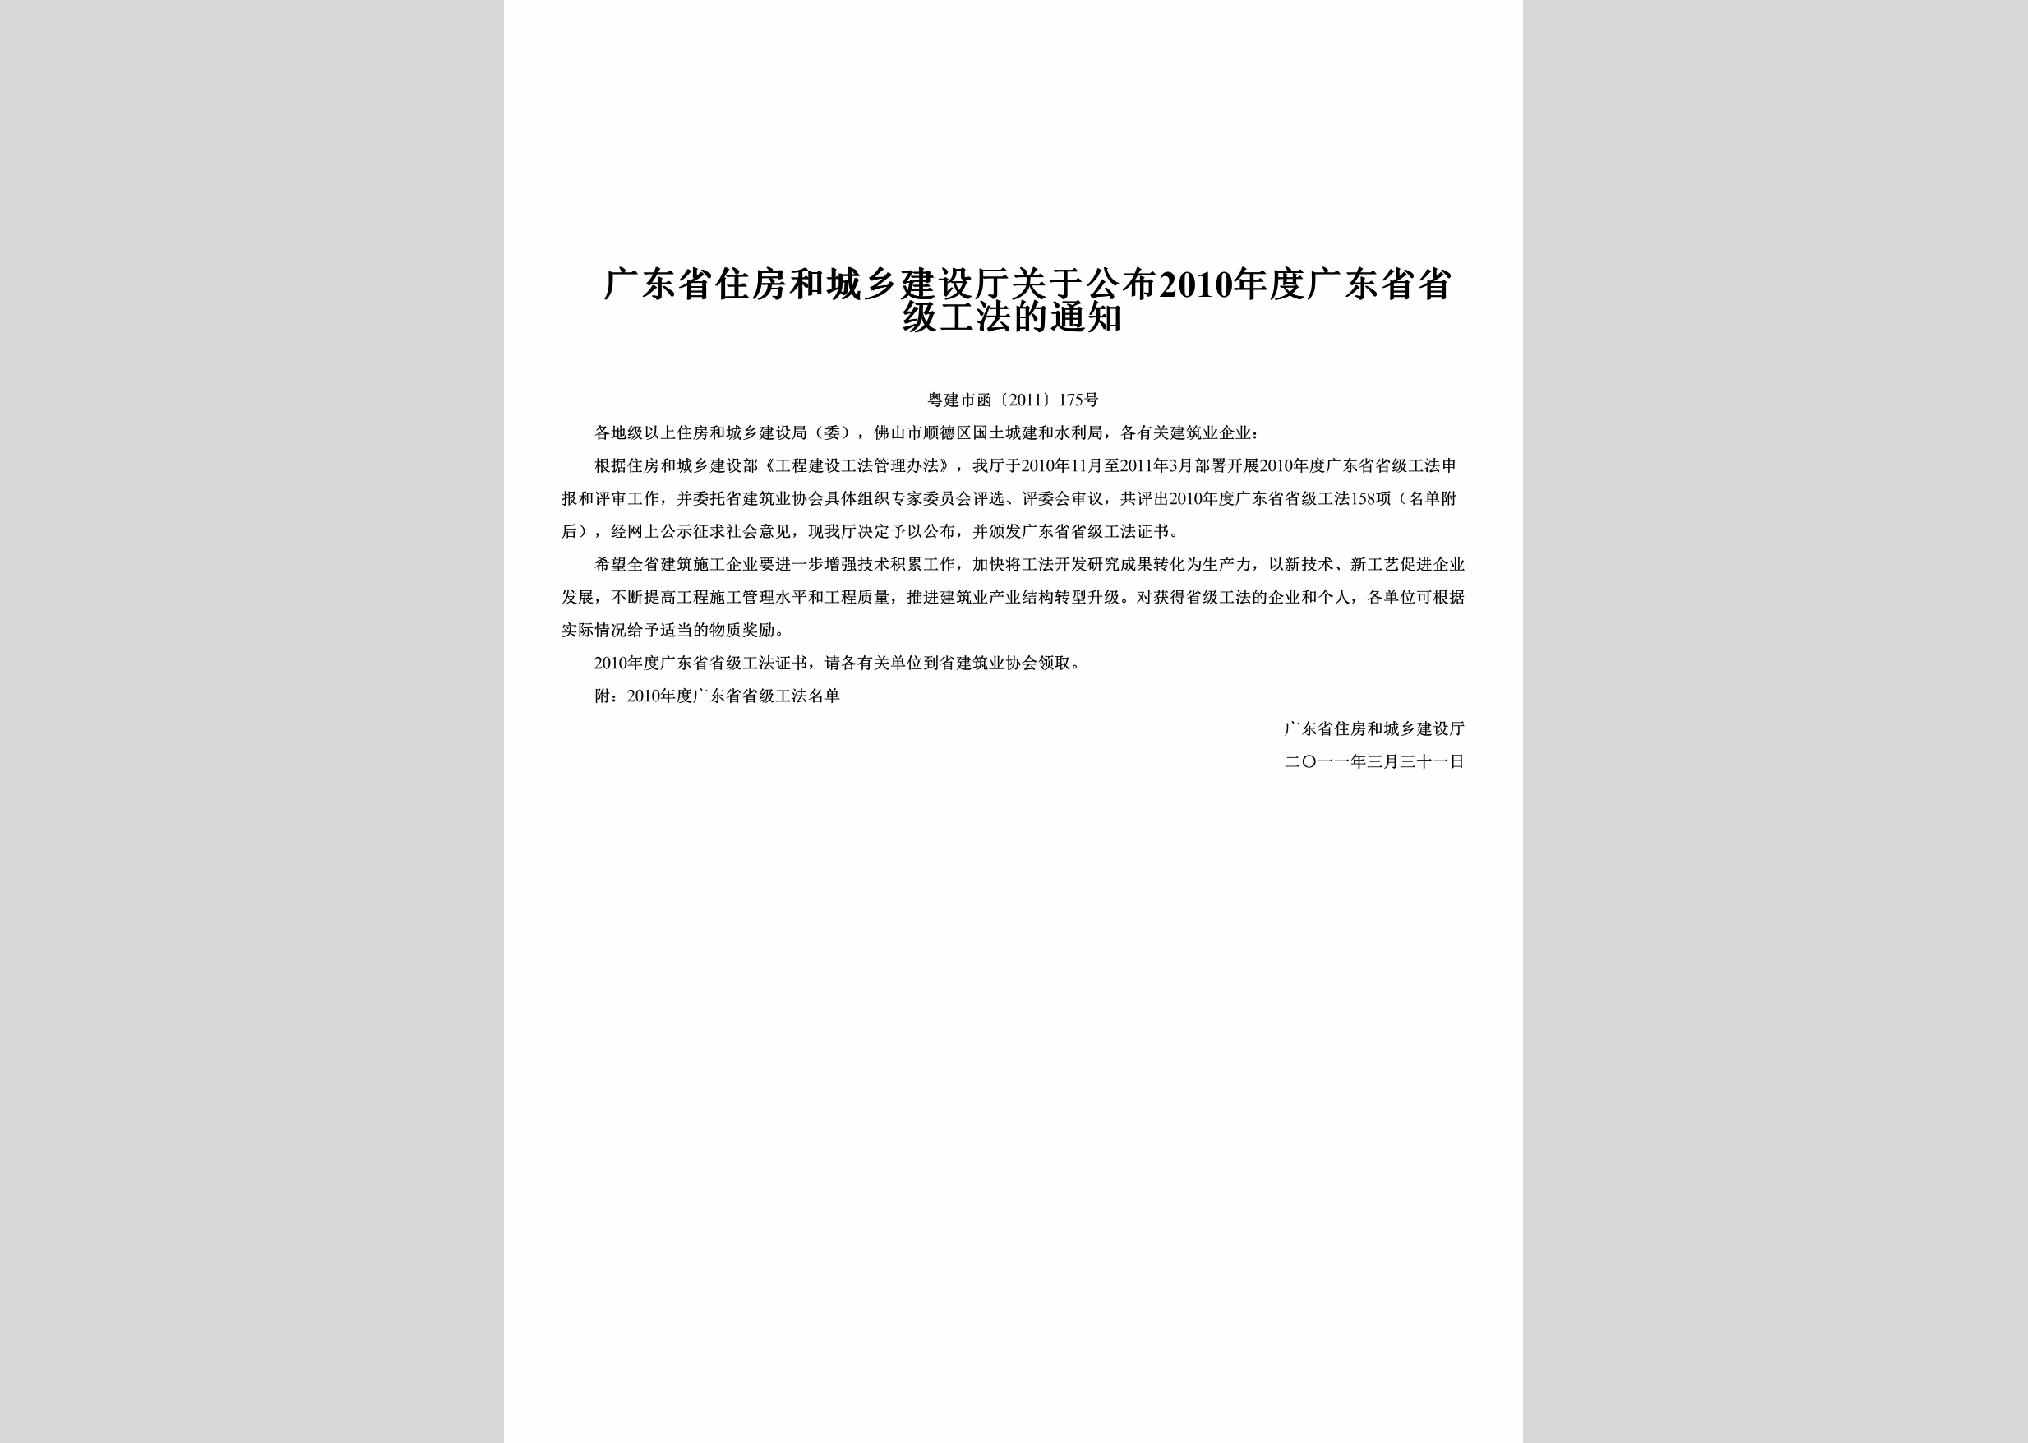 粤建市函[2011]175号：关于公布2010年度广东省省级工法的通知